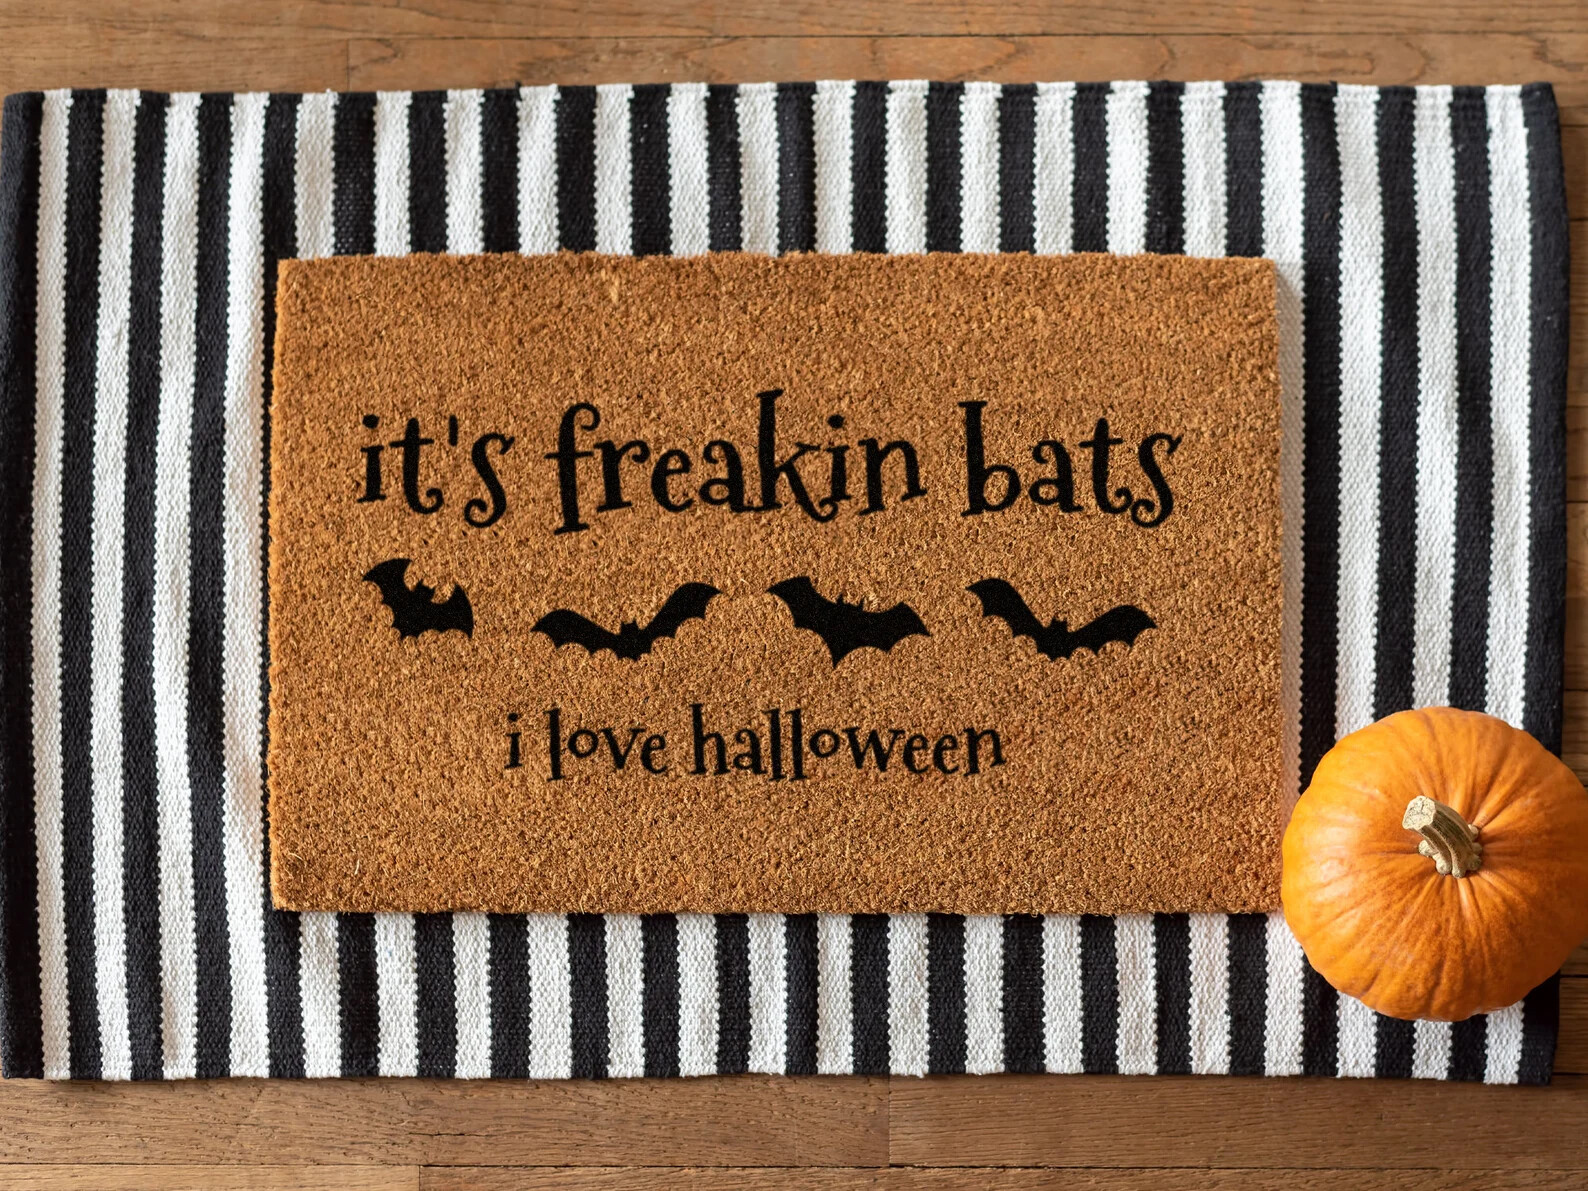 Zero Waste Initiative - zerowasteinitiative.com It's Freakin' Bats - Its Freakin Bats I Love Halloween Natural Fiber Coir Doormat 4